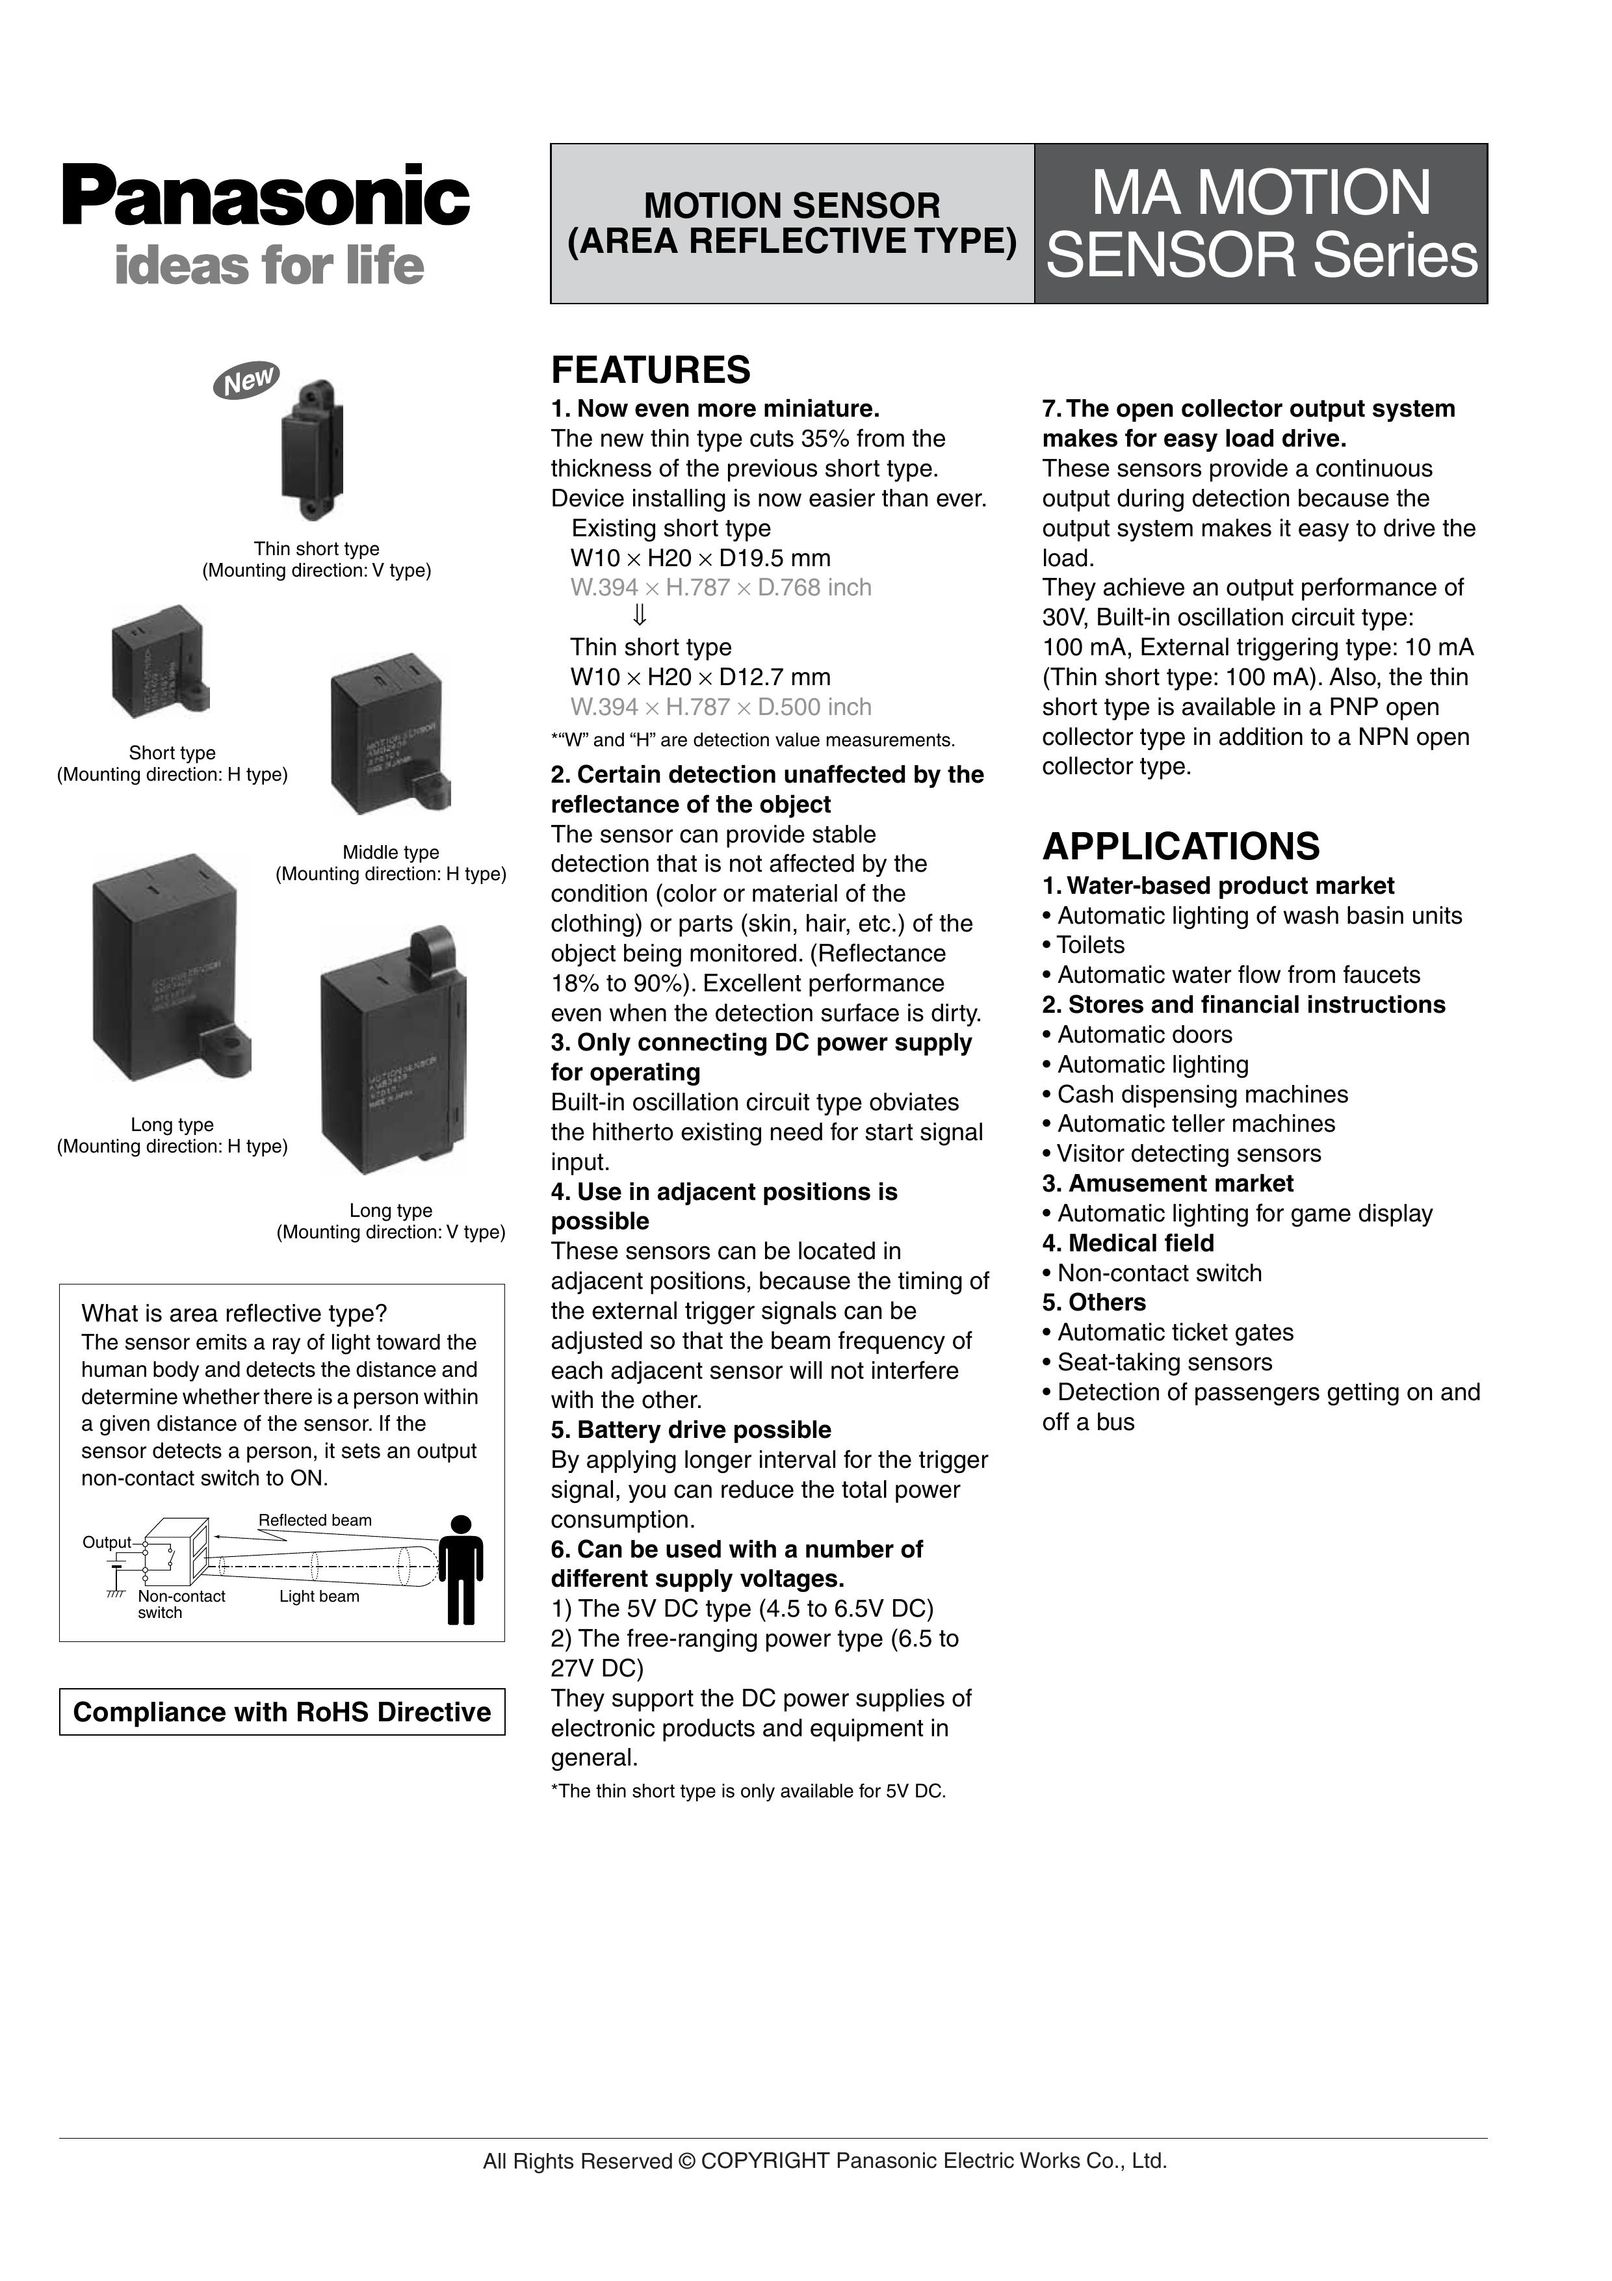 Panasonic Sensor Series Home Safety Product User Manual